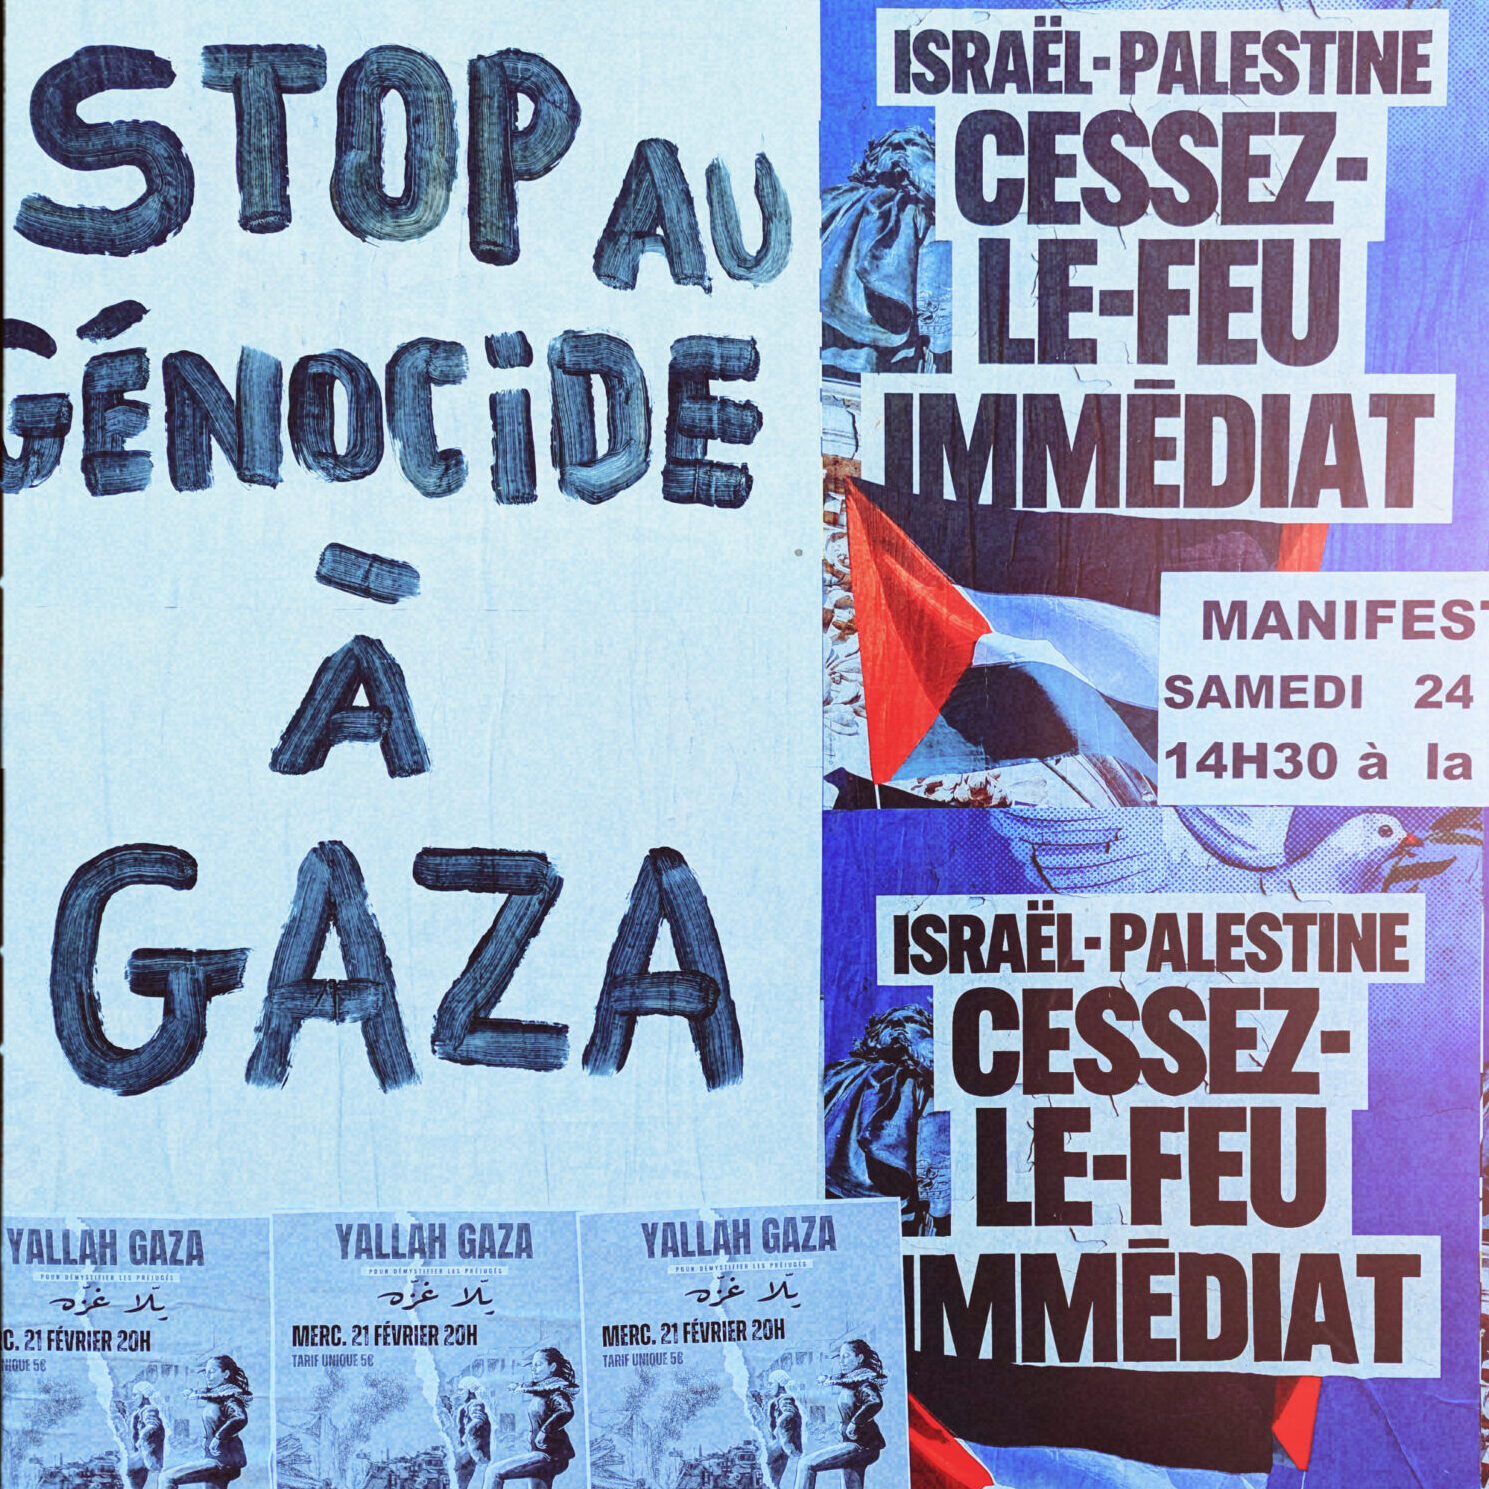 Une nouvelle marche pour la paix à Gaza le 24 février